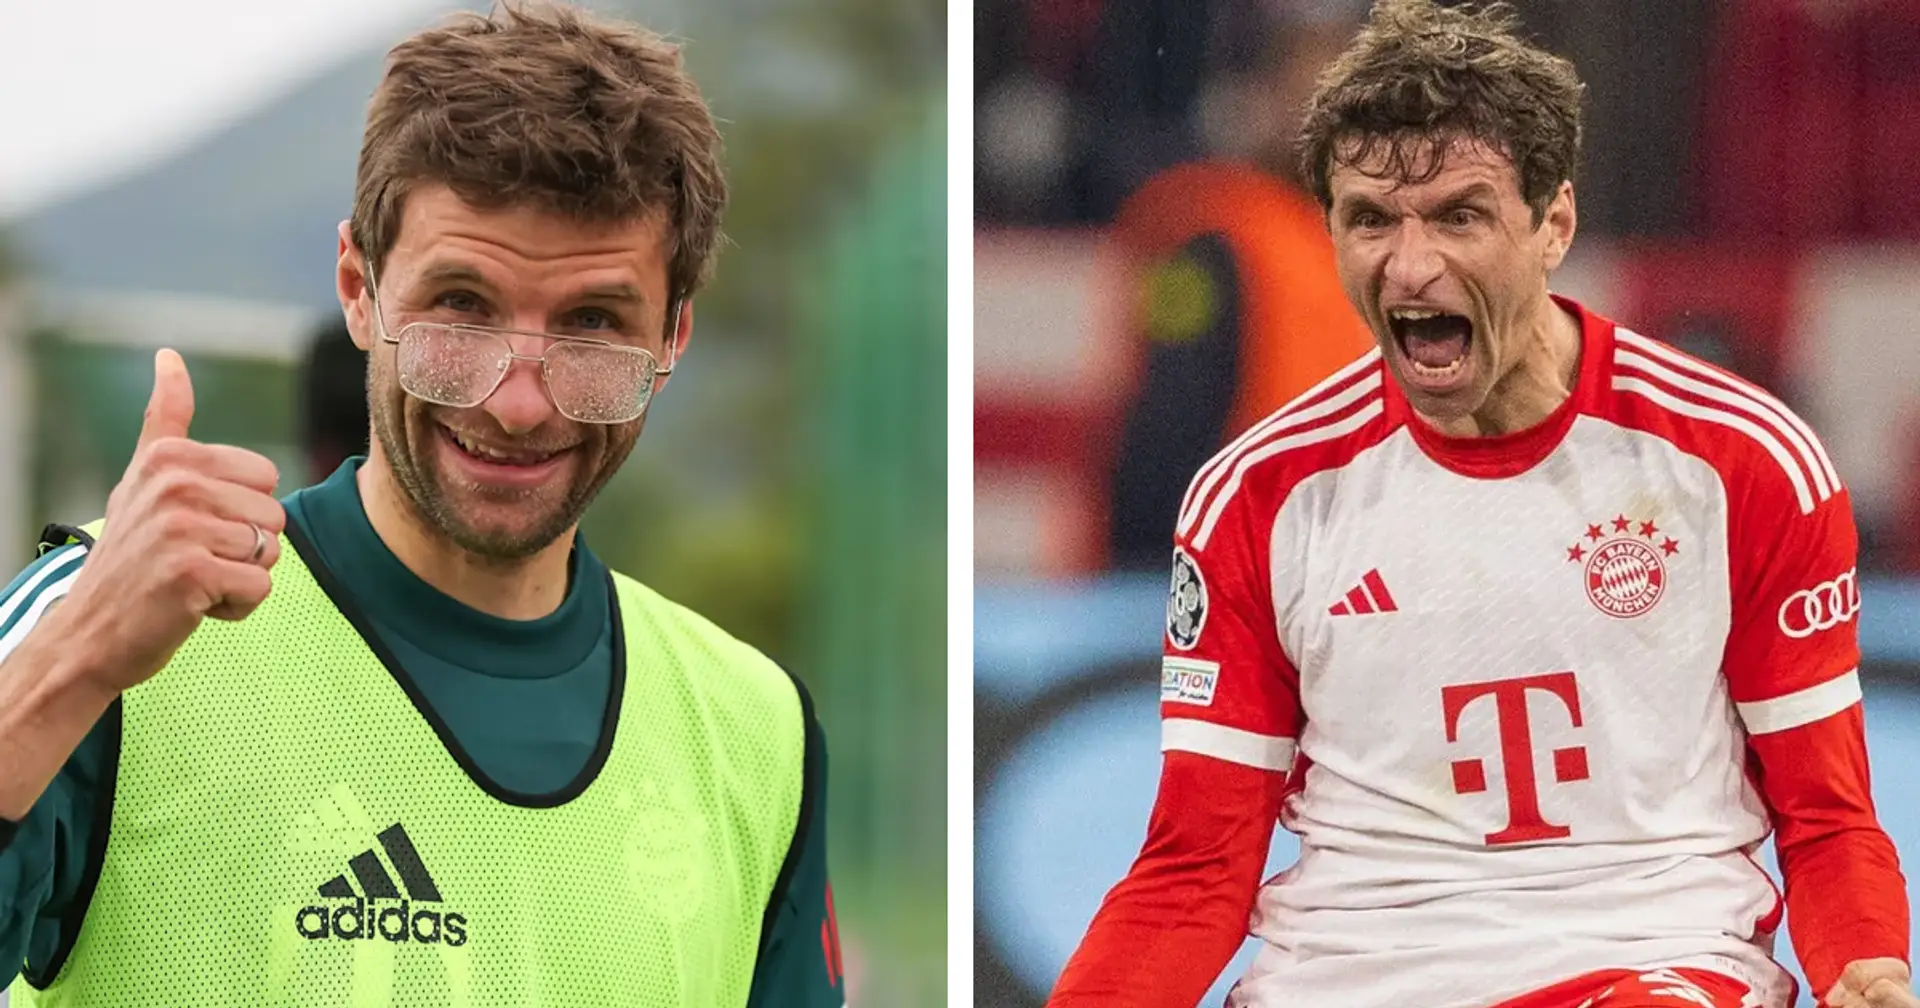 Warum ich Thomas Müller zutraue, Bayerns Cheftrainer zu werden